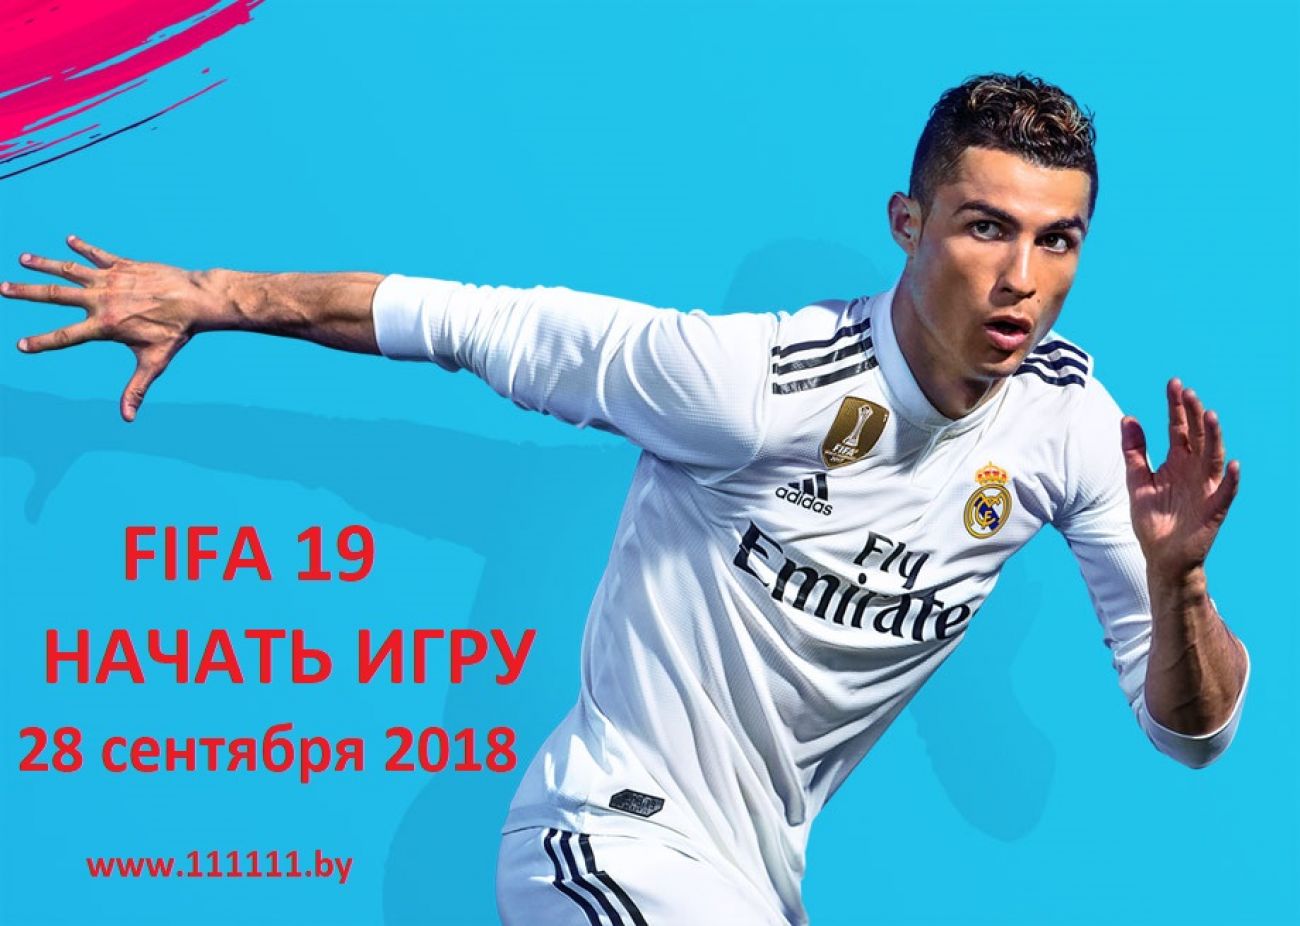 FIFA 19 PS4 / для Playstation 4           НАЧАТЬ ИГРУ 28 сентября 2018